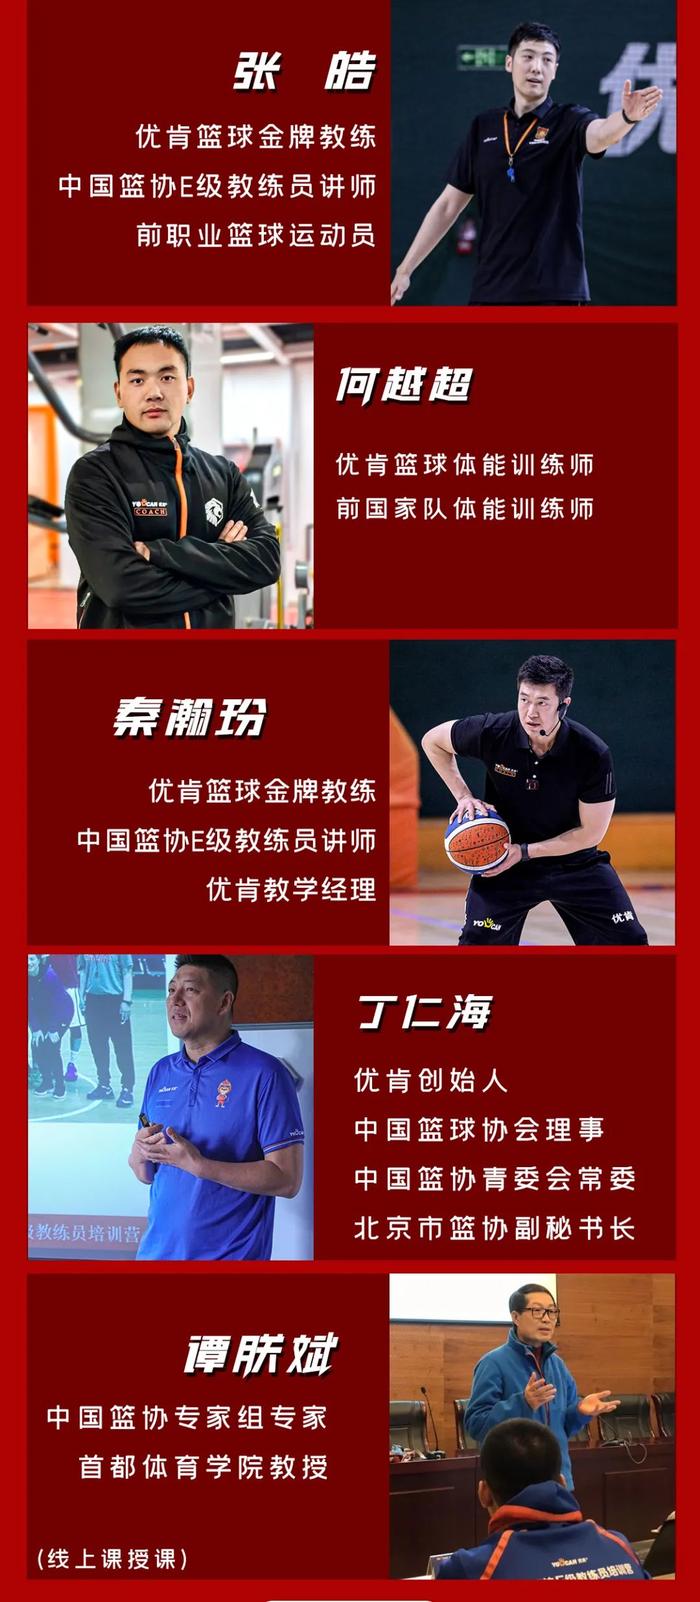 中国篮协e级教练员培训(优肯)第27期丨六月升级,重磅开班!